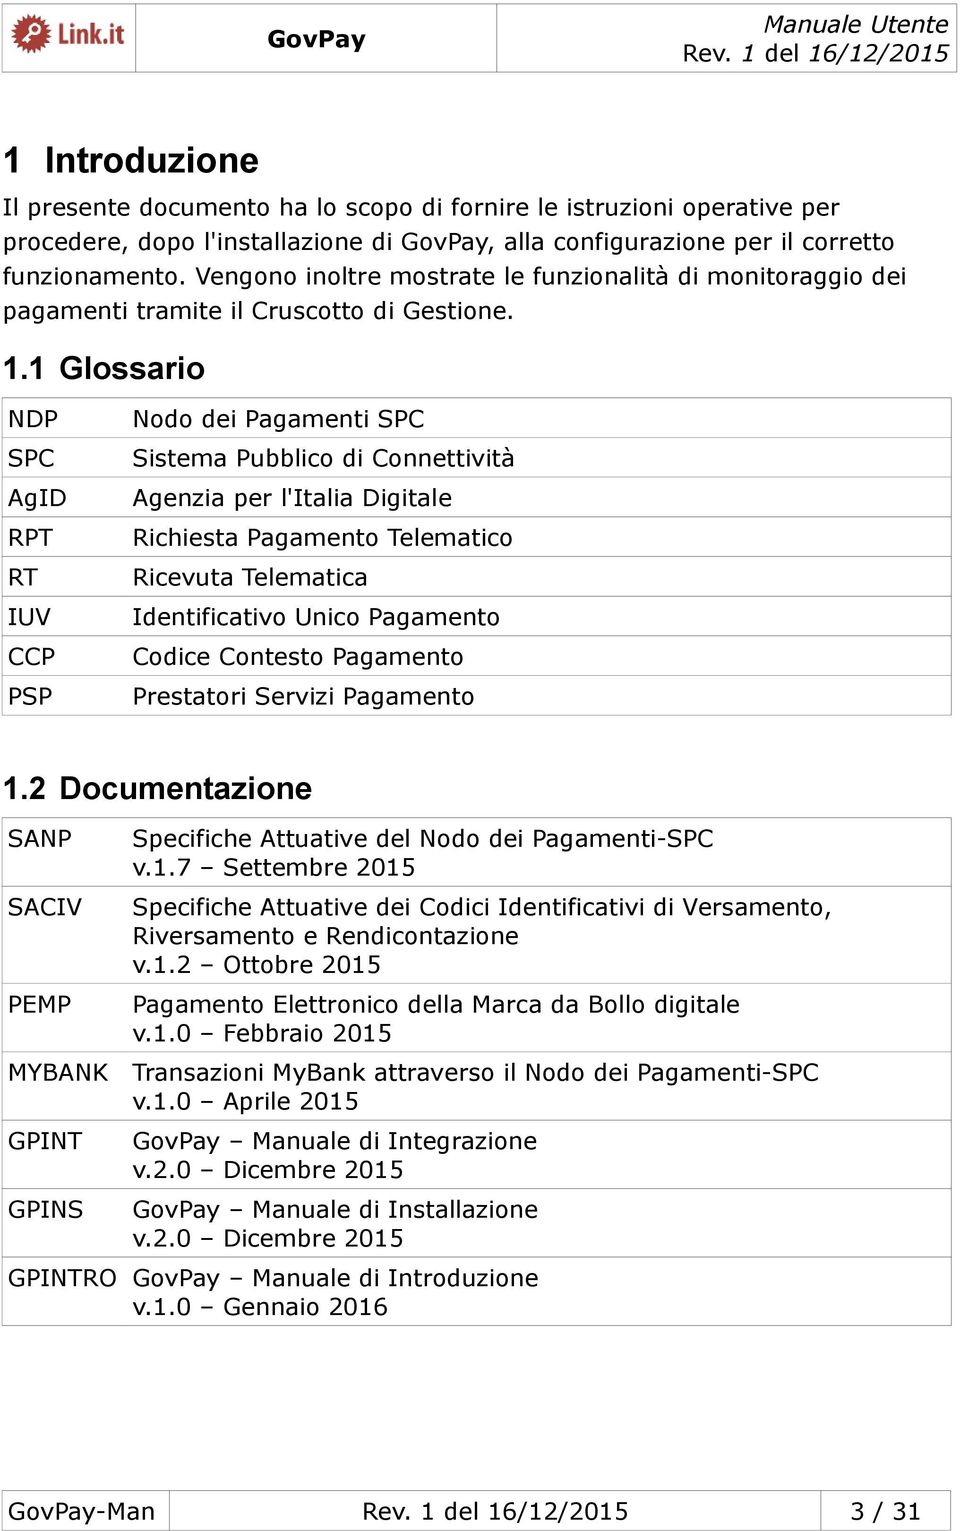 1 Glossario NDP SPC AgID RPT RT IUV CCP PSP Nodo dei Pagamenti SPC Sistema Pubblico di Connettività Agenzia per l'italia Digitale Richiesta Pagamento Telematico Ricevuta Telematica Identificativo